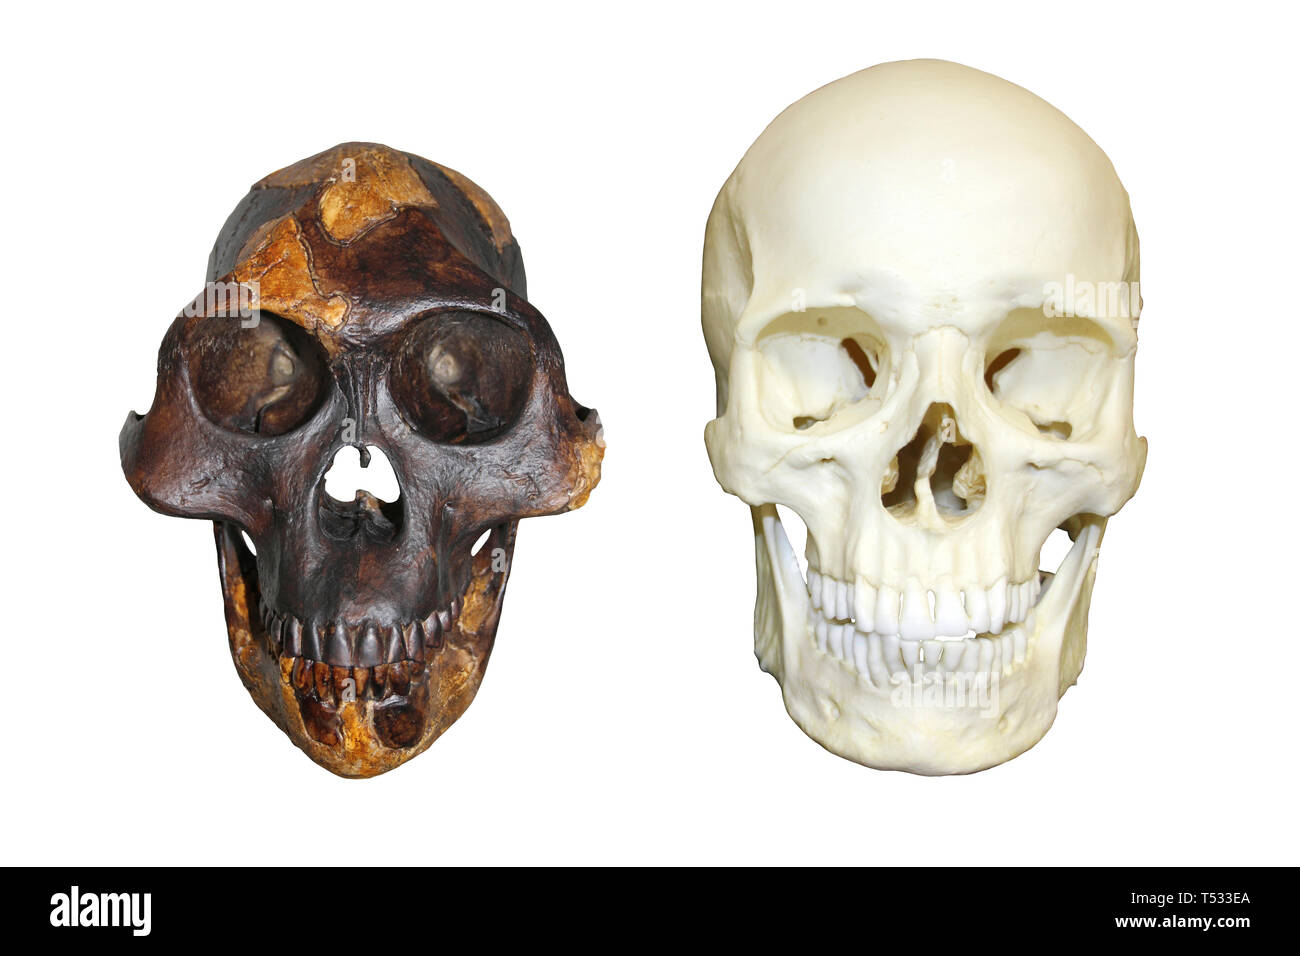 Schädel von Lucy Australopithecus afarensis vs modernen Menschen Homo sapiens Stockfoto